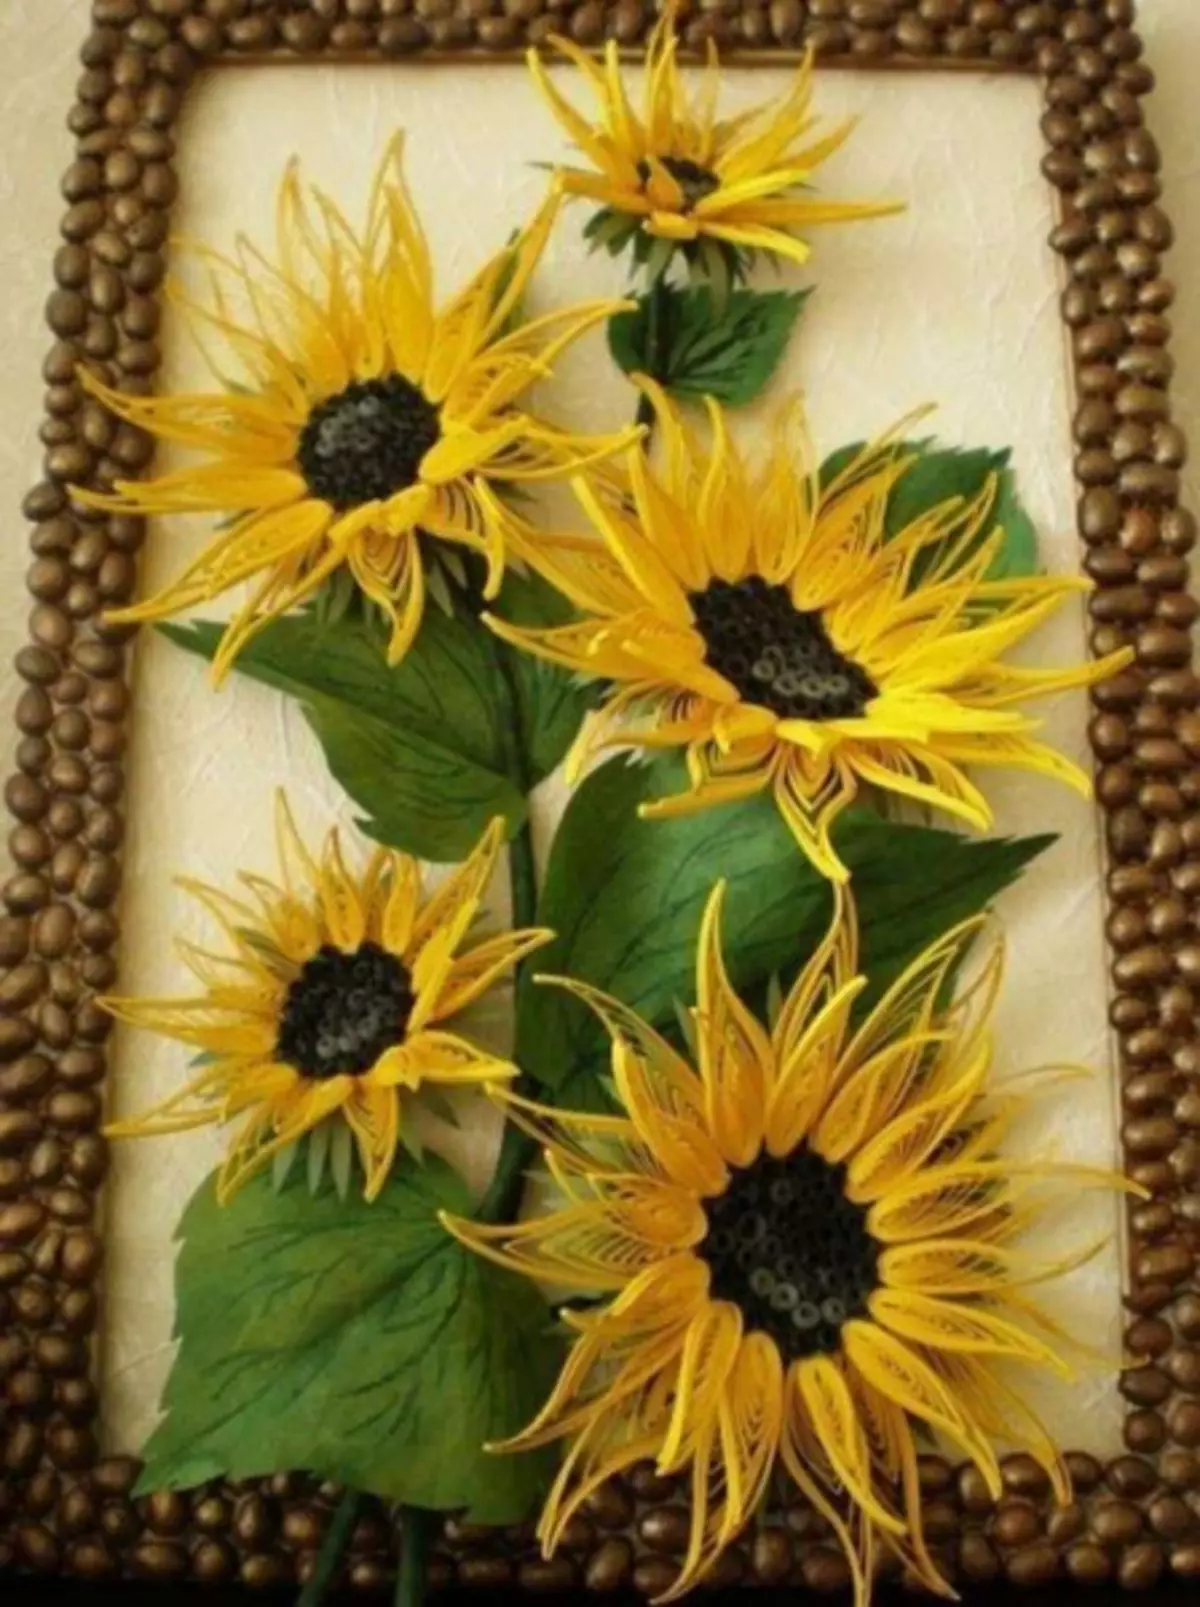 Sunflower kubva papepa nemaoko ako pachako: Master kirasi ine mufananidzo